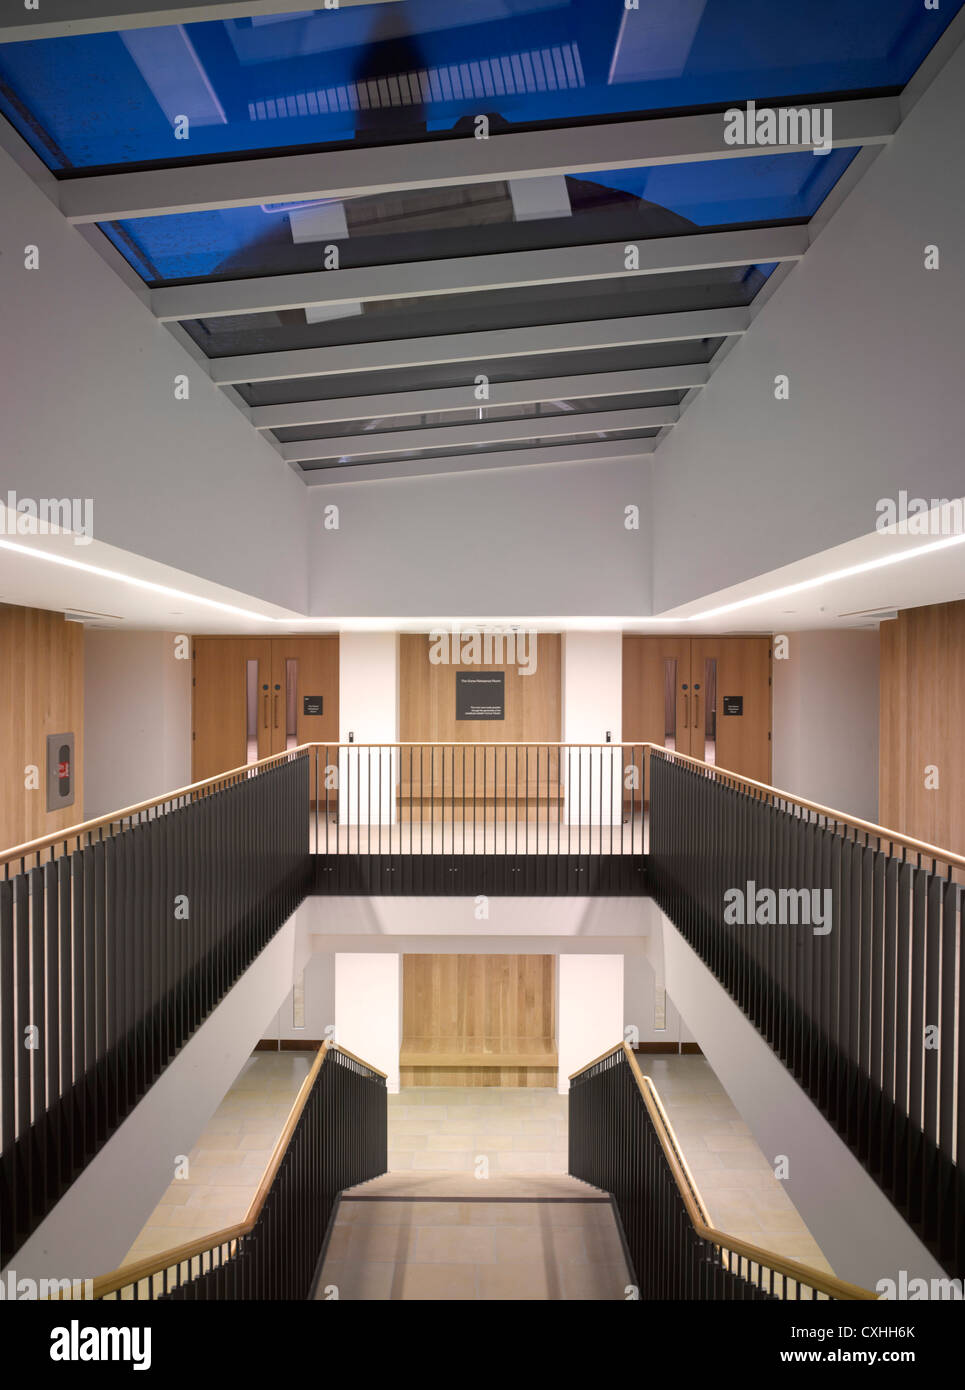 Bramall Musik-Gebäude, Universität von Birmingham, Birmingham, Vereinigtes Königreich. Architekt: Glenn Howells Architects, 2012. Interio Stockfoto